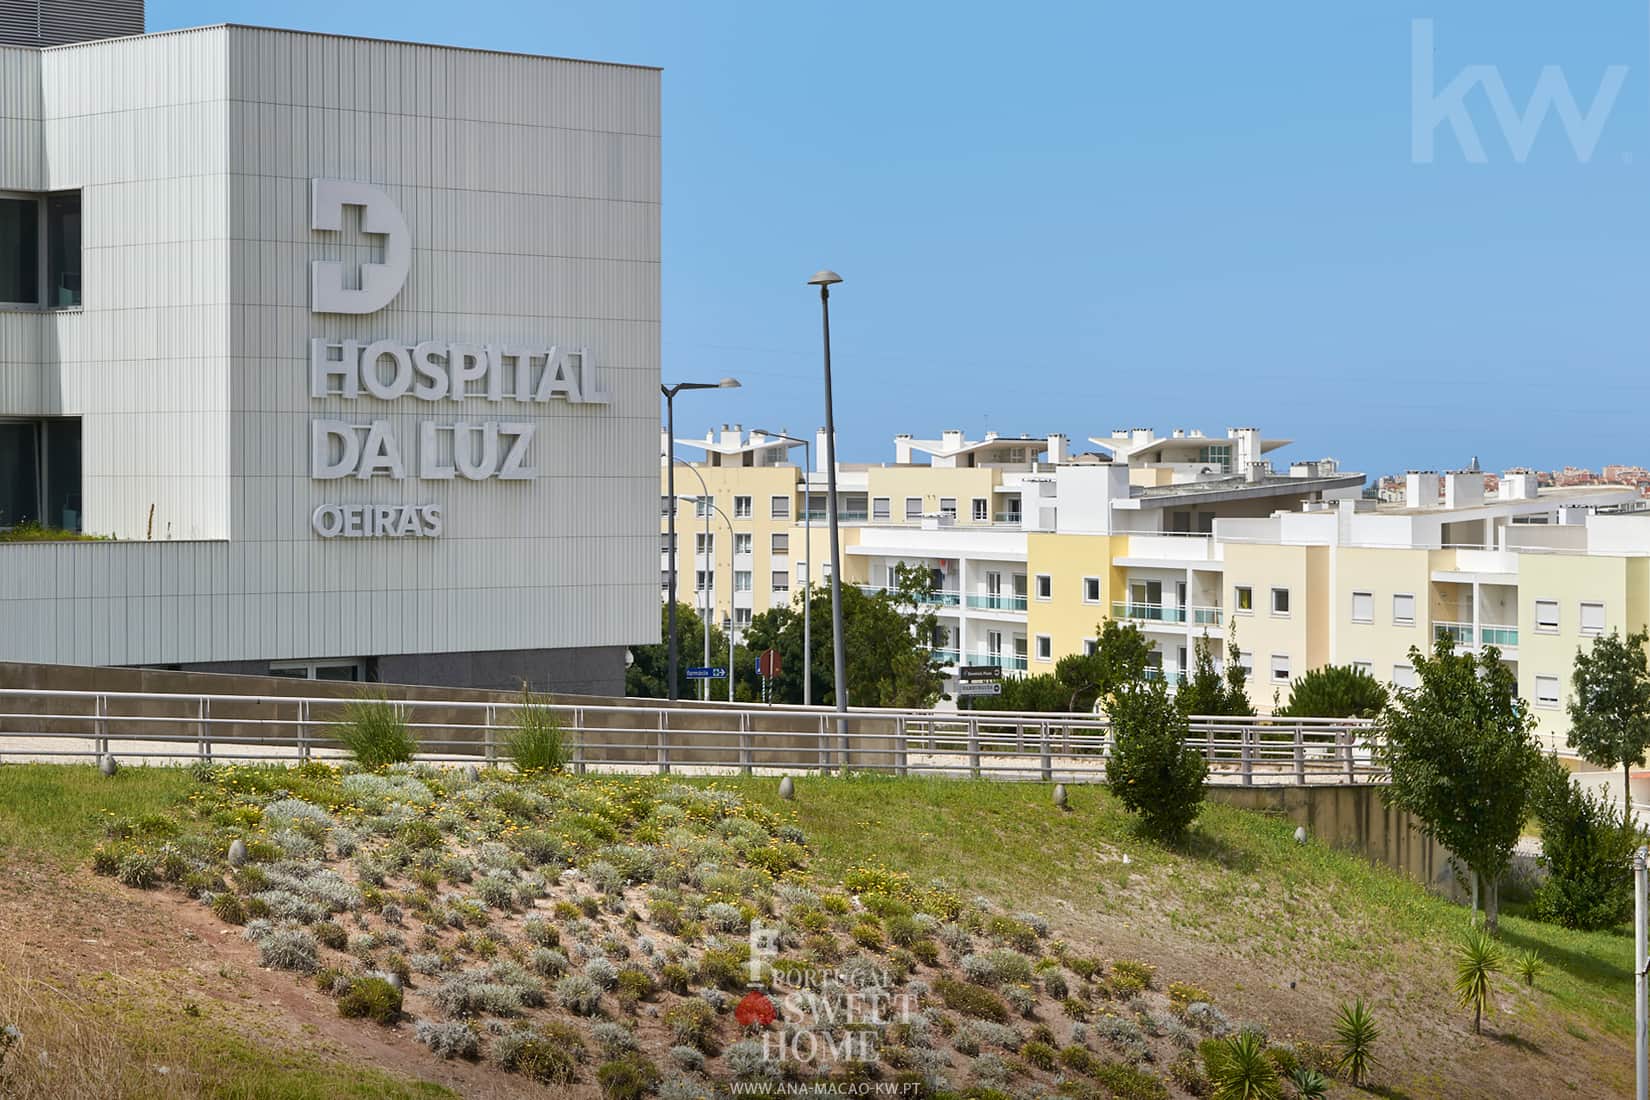 Hospital da Luz de Oeiras, in front of the property